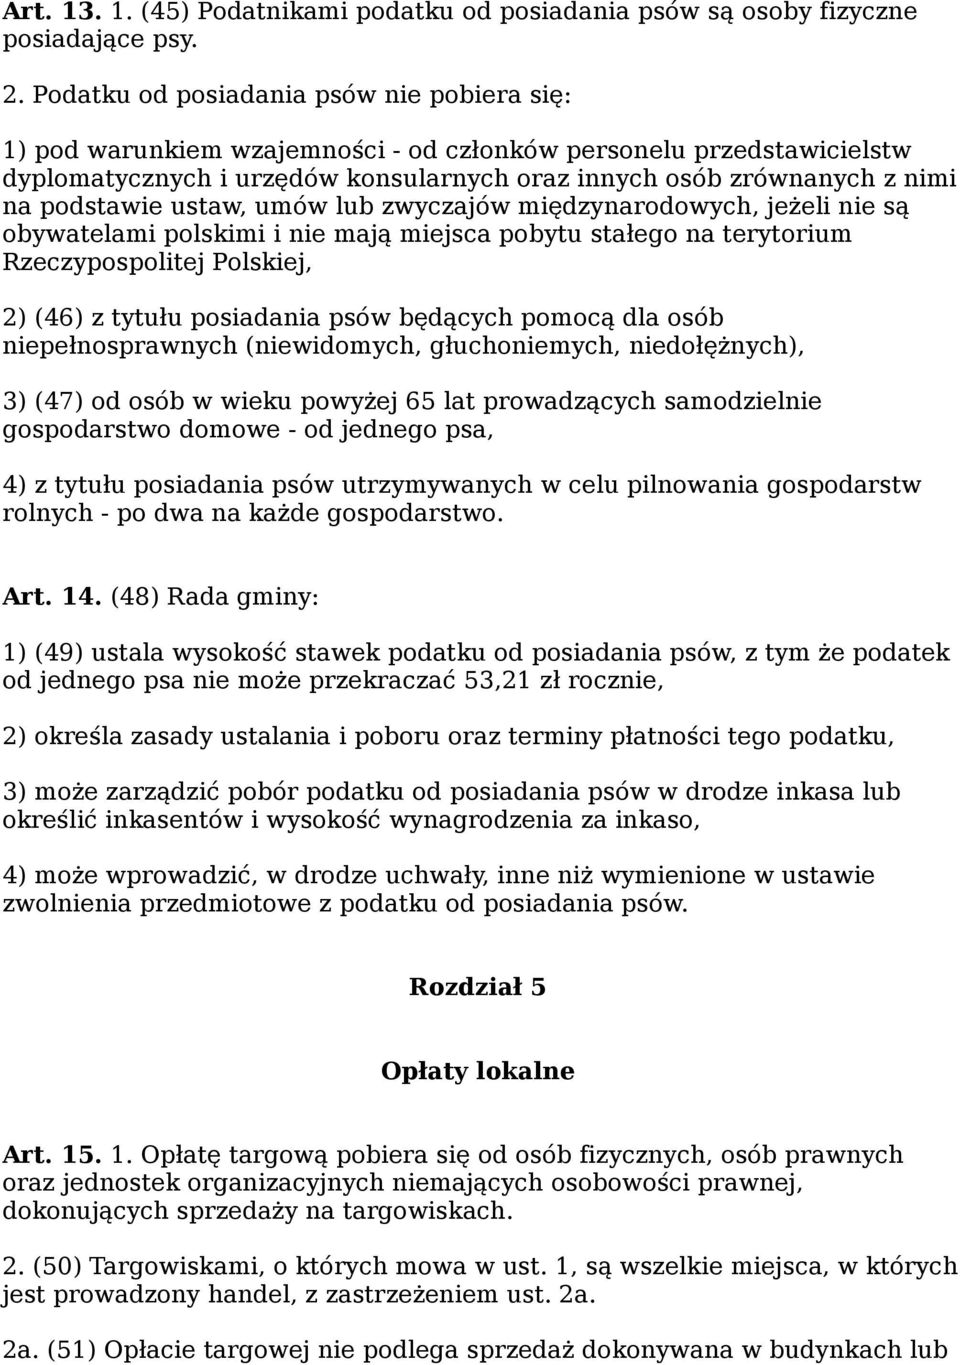 podstawie ustaw, umów lub zwyczajów międzynarodowych, jeżeli nie są obywatelami polskimi i nie mają miejsca pobytu stałego na terytorium Rzeczypospolitej Polskiej, 2) (46) z tytułu posiadania psów